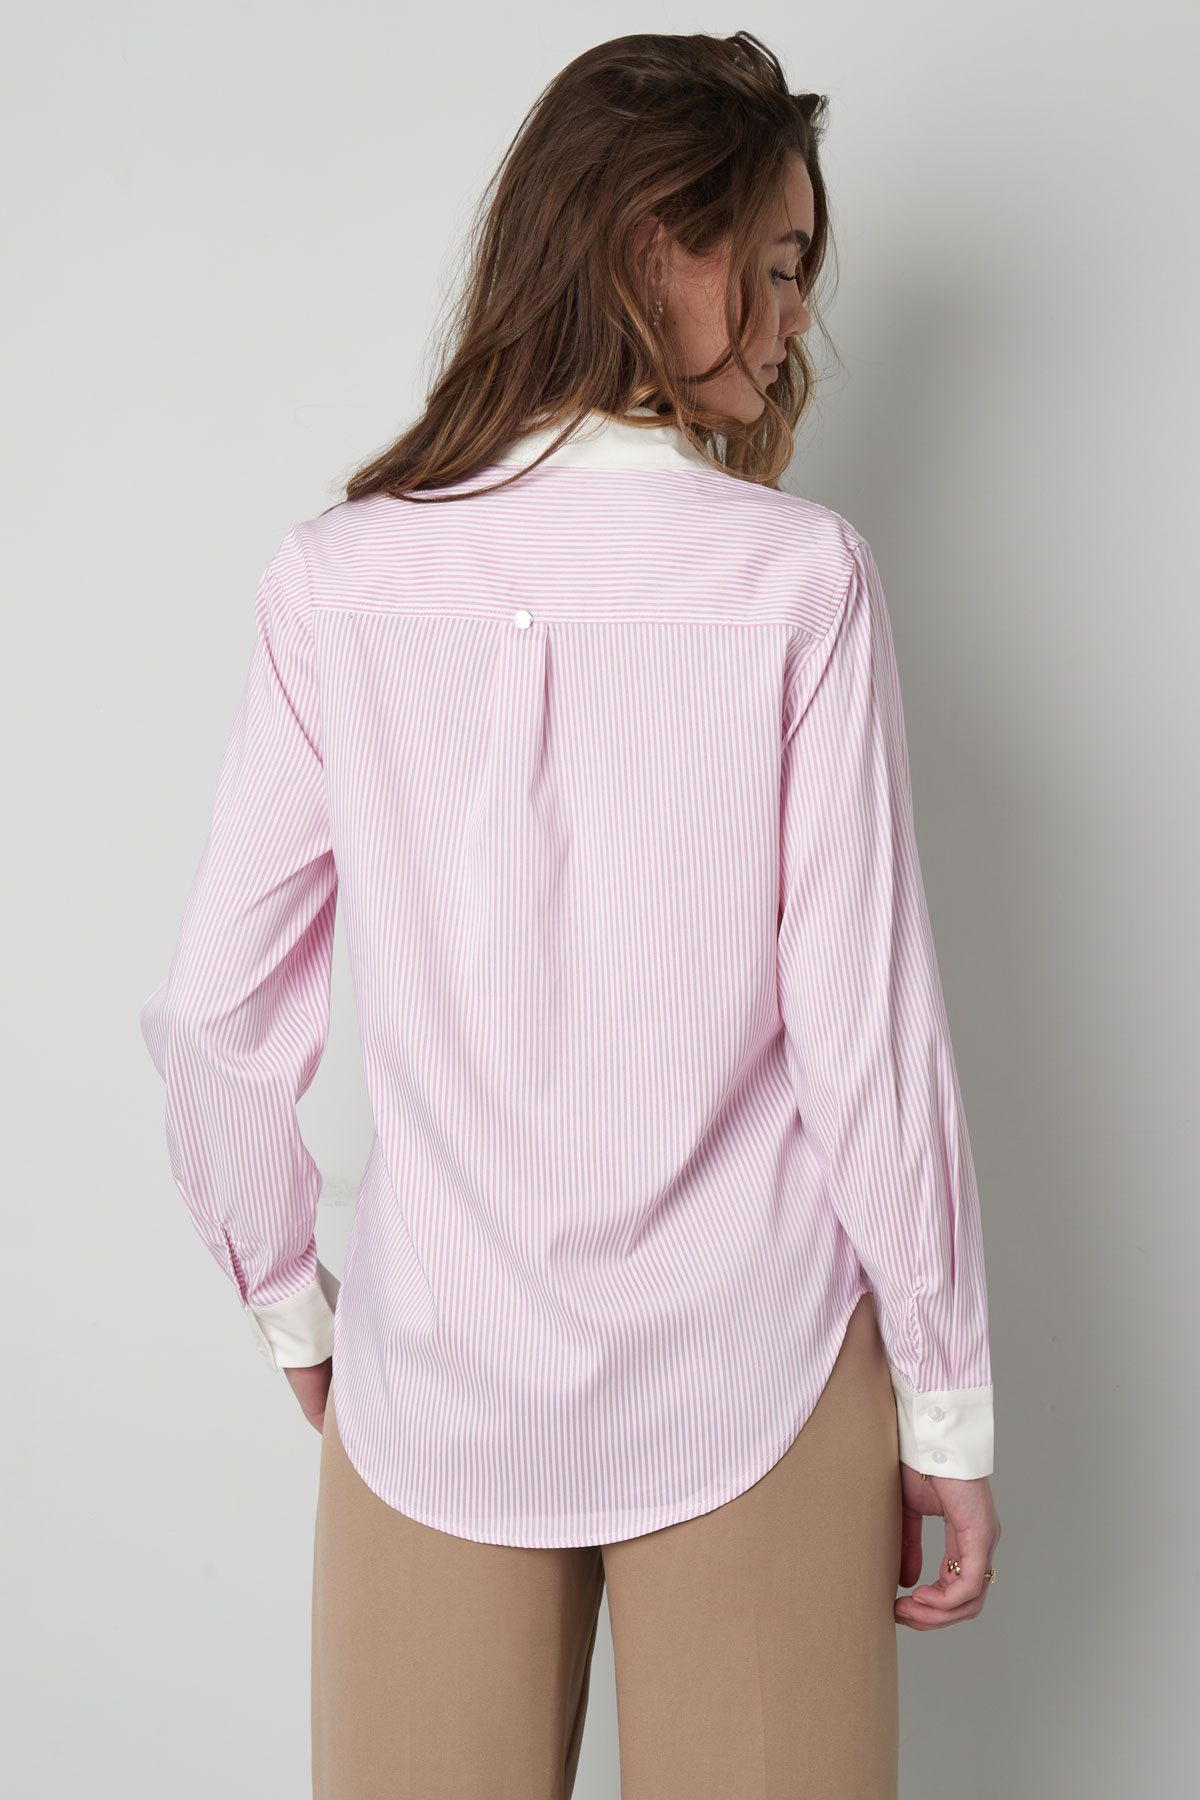 Temel bluz şeritleri - beyaz/pembe h5 Resim8